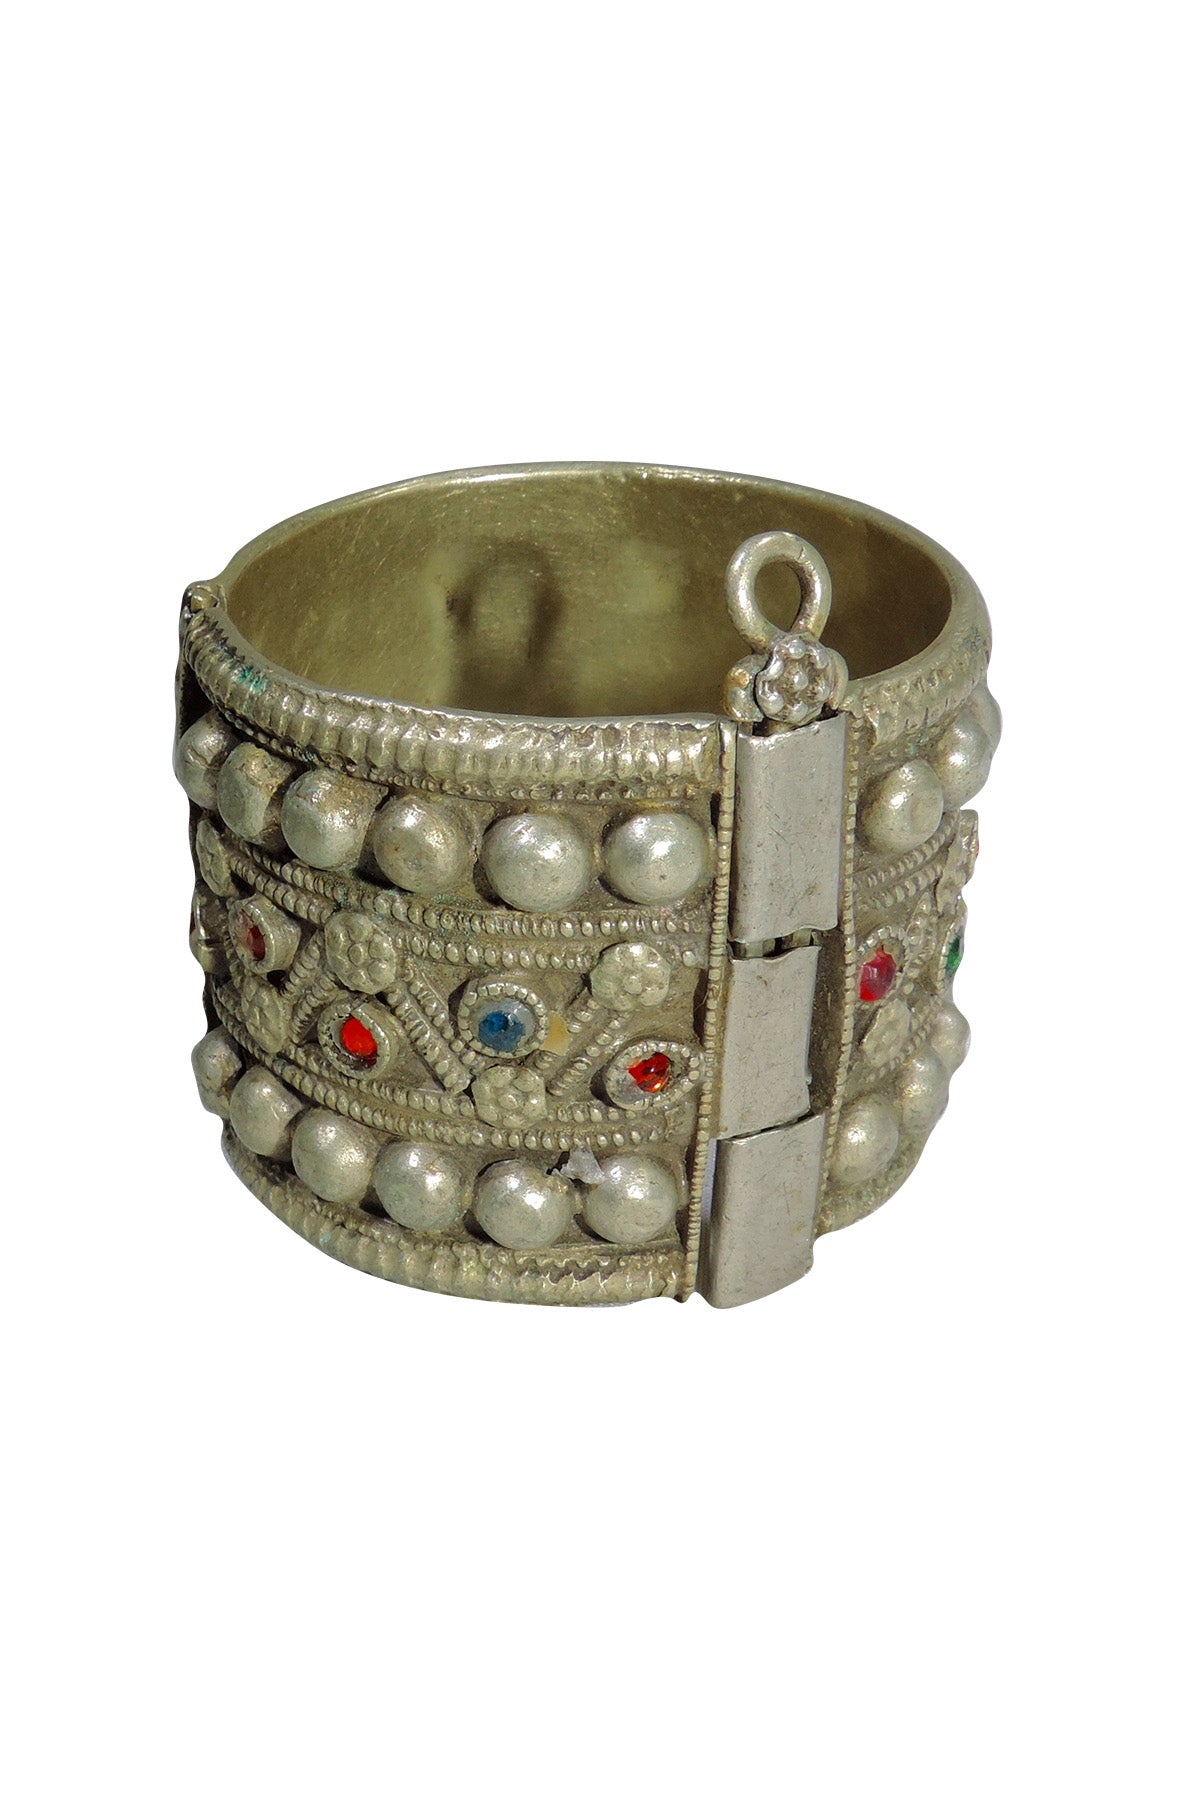 Vintage Turkmen Bracelet With Blue/Red Crystals